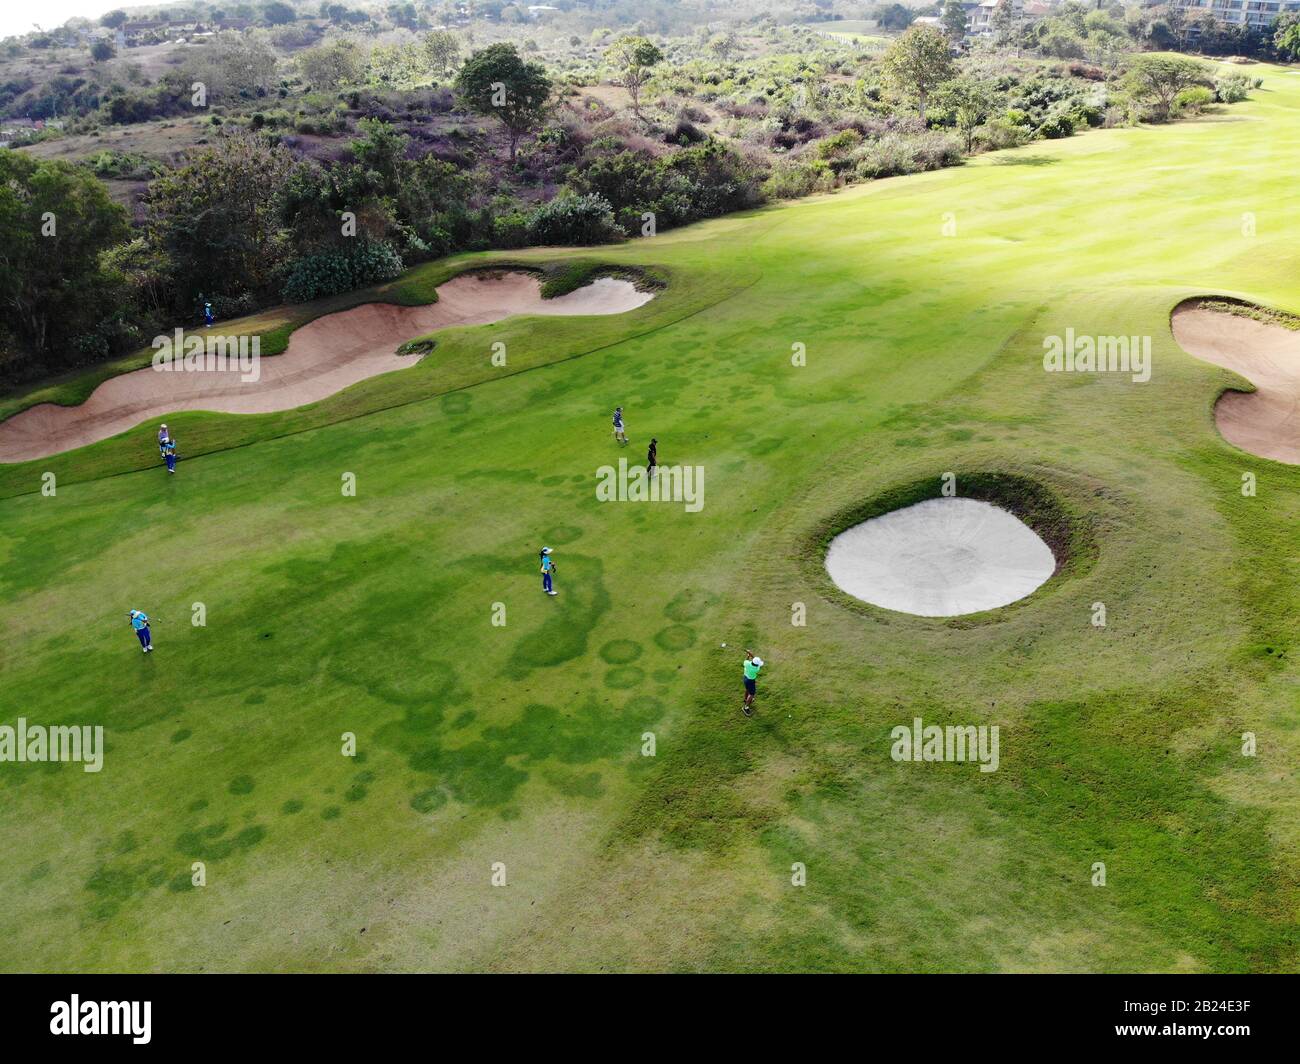 Vue aérienne du parcours de golf avec joueur, sentier sur le parcours de golf, jeu en profitant du jeu sous le soleil, terrain de golf vue ariel, Bali, Indonésie Banque D'Images